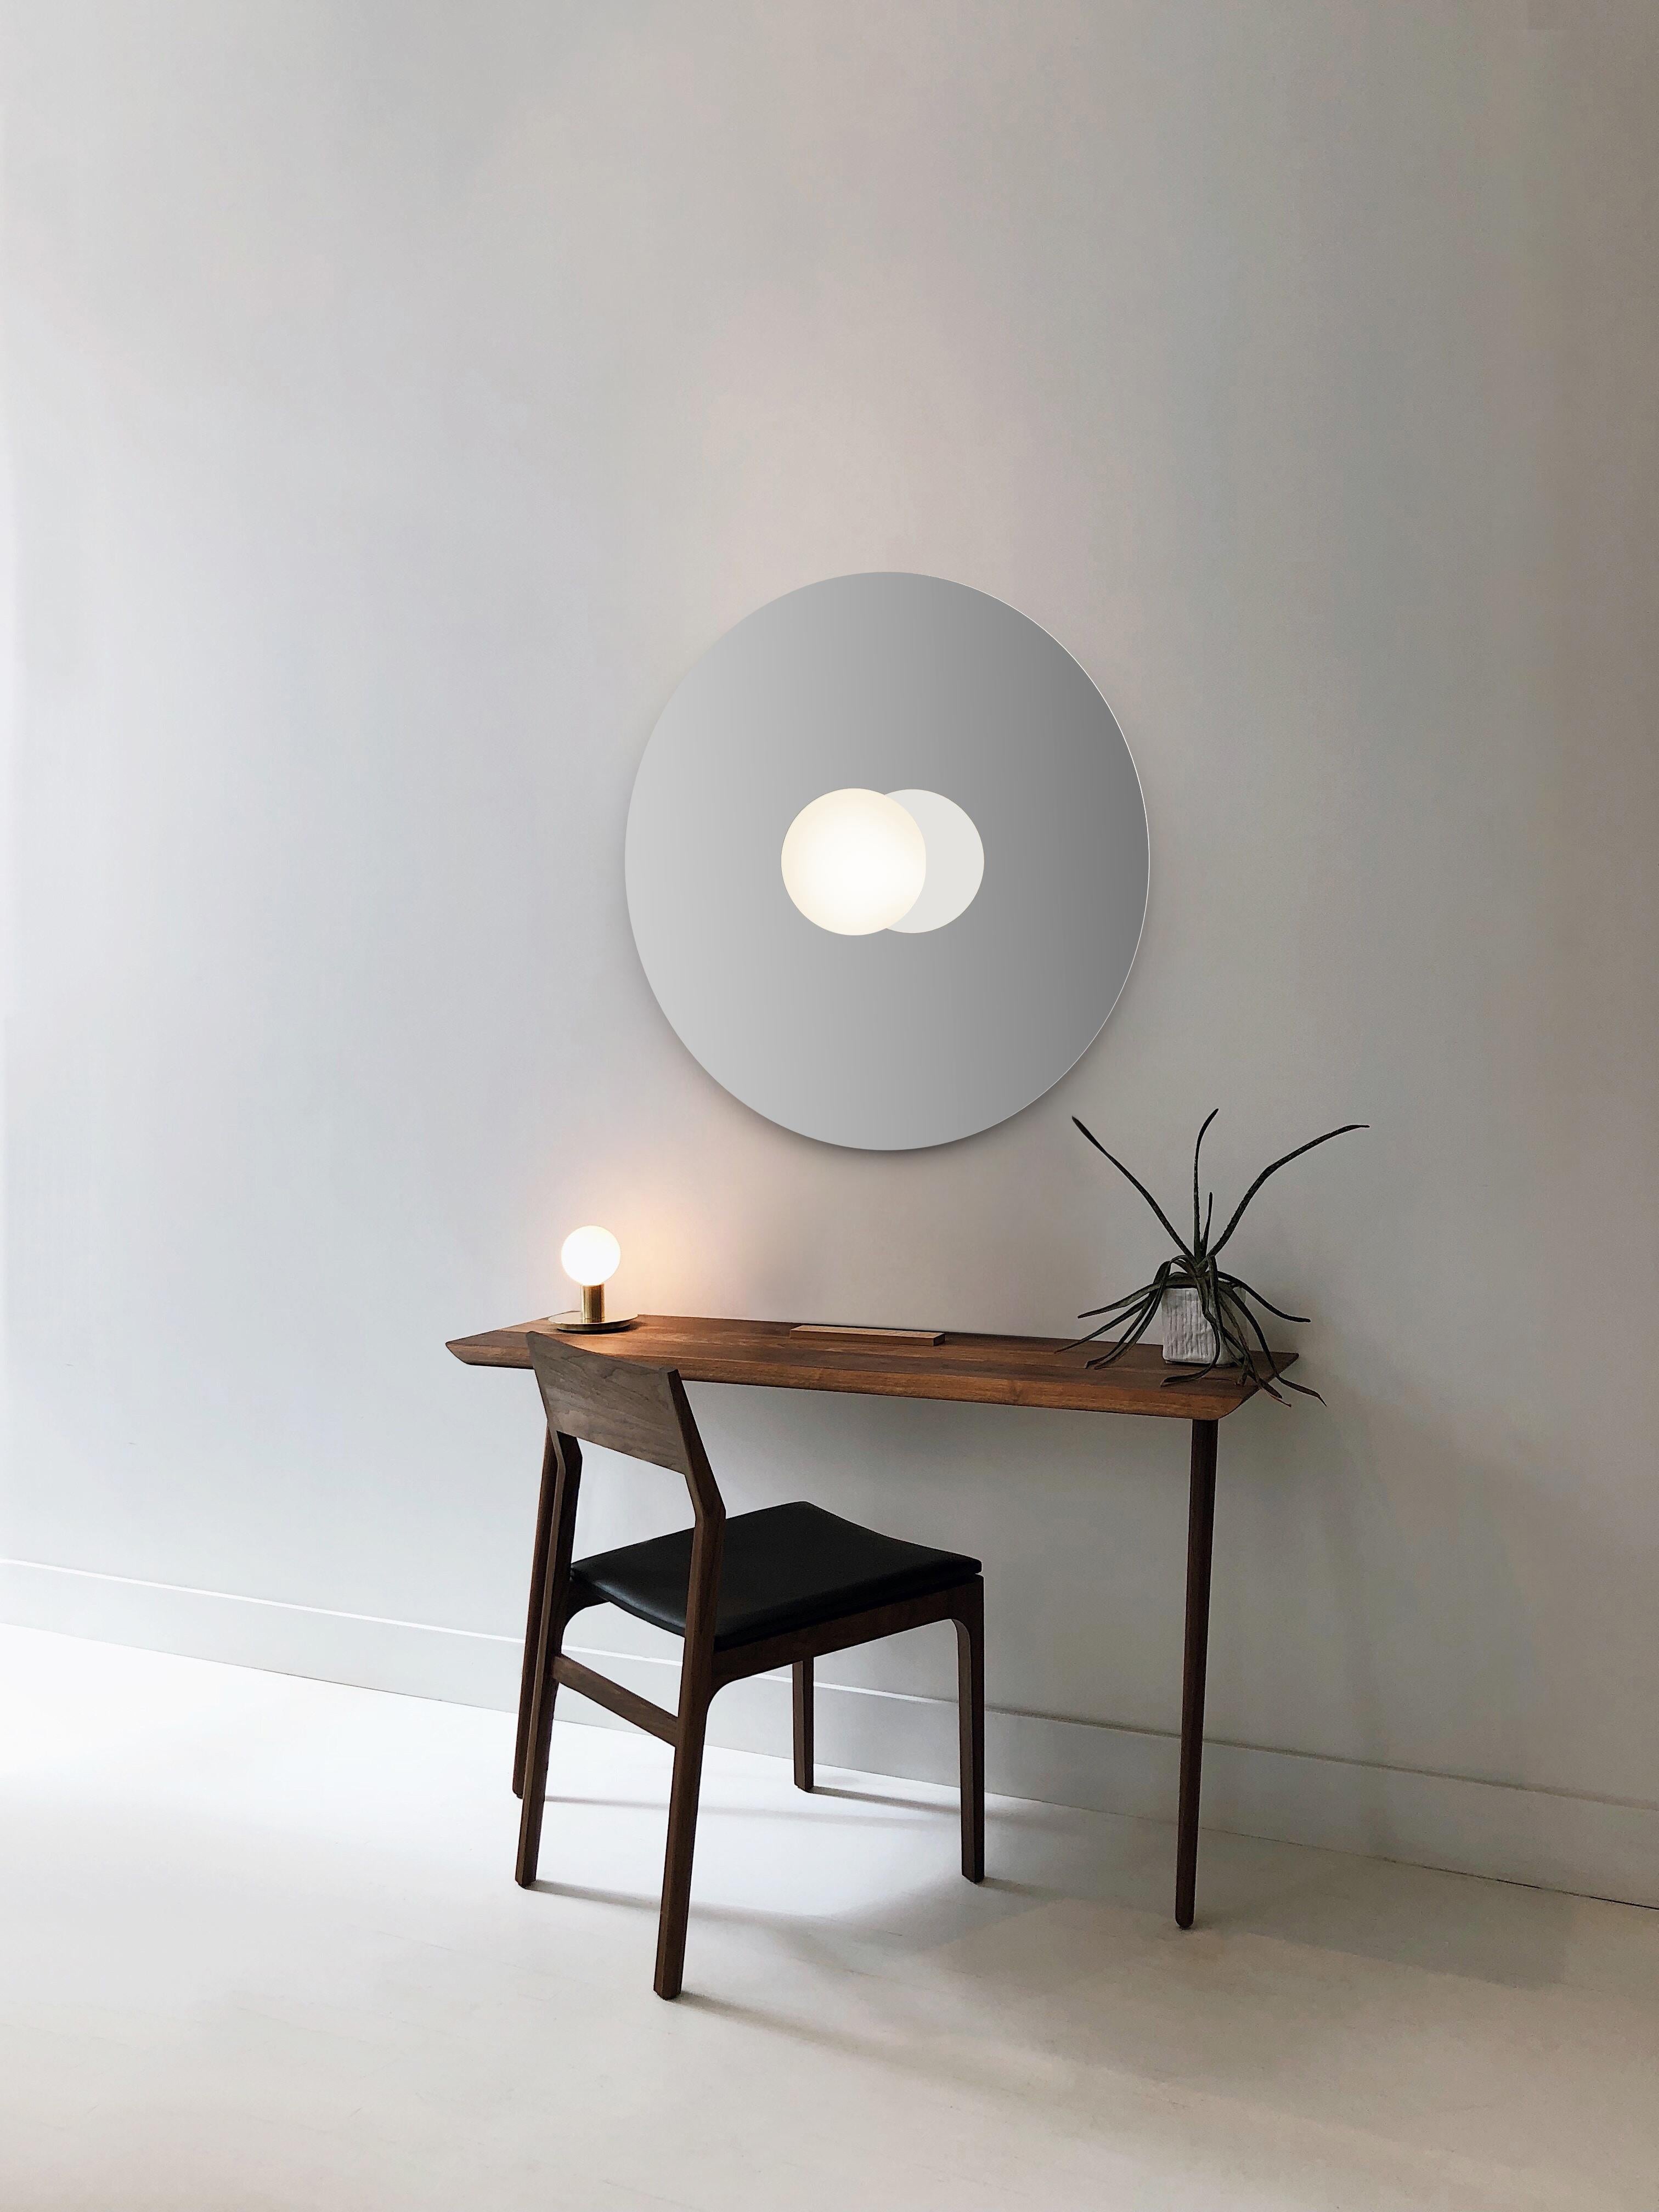 Étude de la simplicité raffinée, le Bola Disc Flush offre une combinaison magique de miroir et de globe raffiné jusqu'à l'essentiel. L'objectif du Bola Disc Flush est de fournir une lumière directe et réfléchie à partir de points d'observation fixés